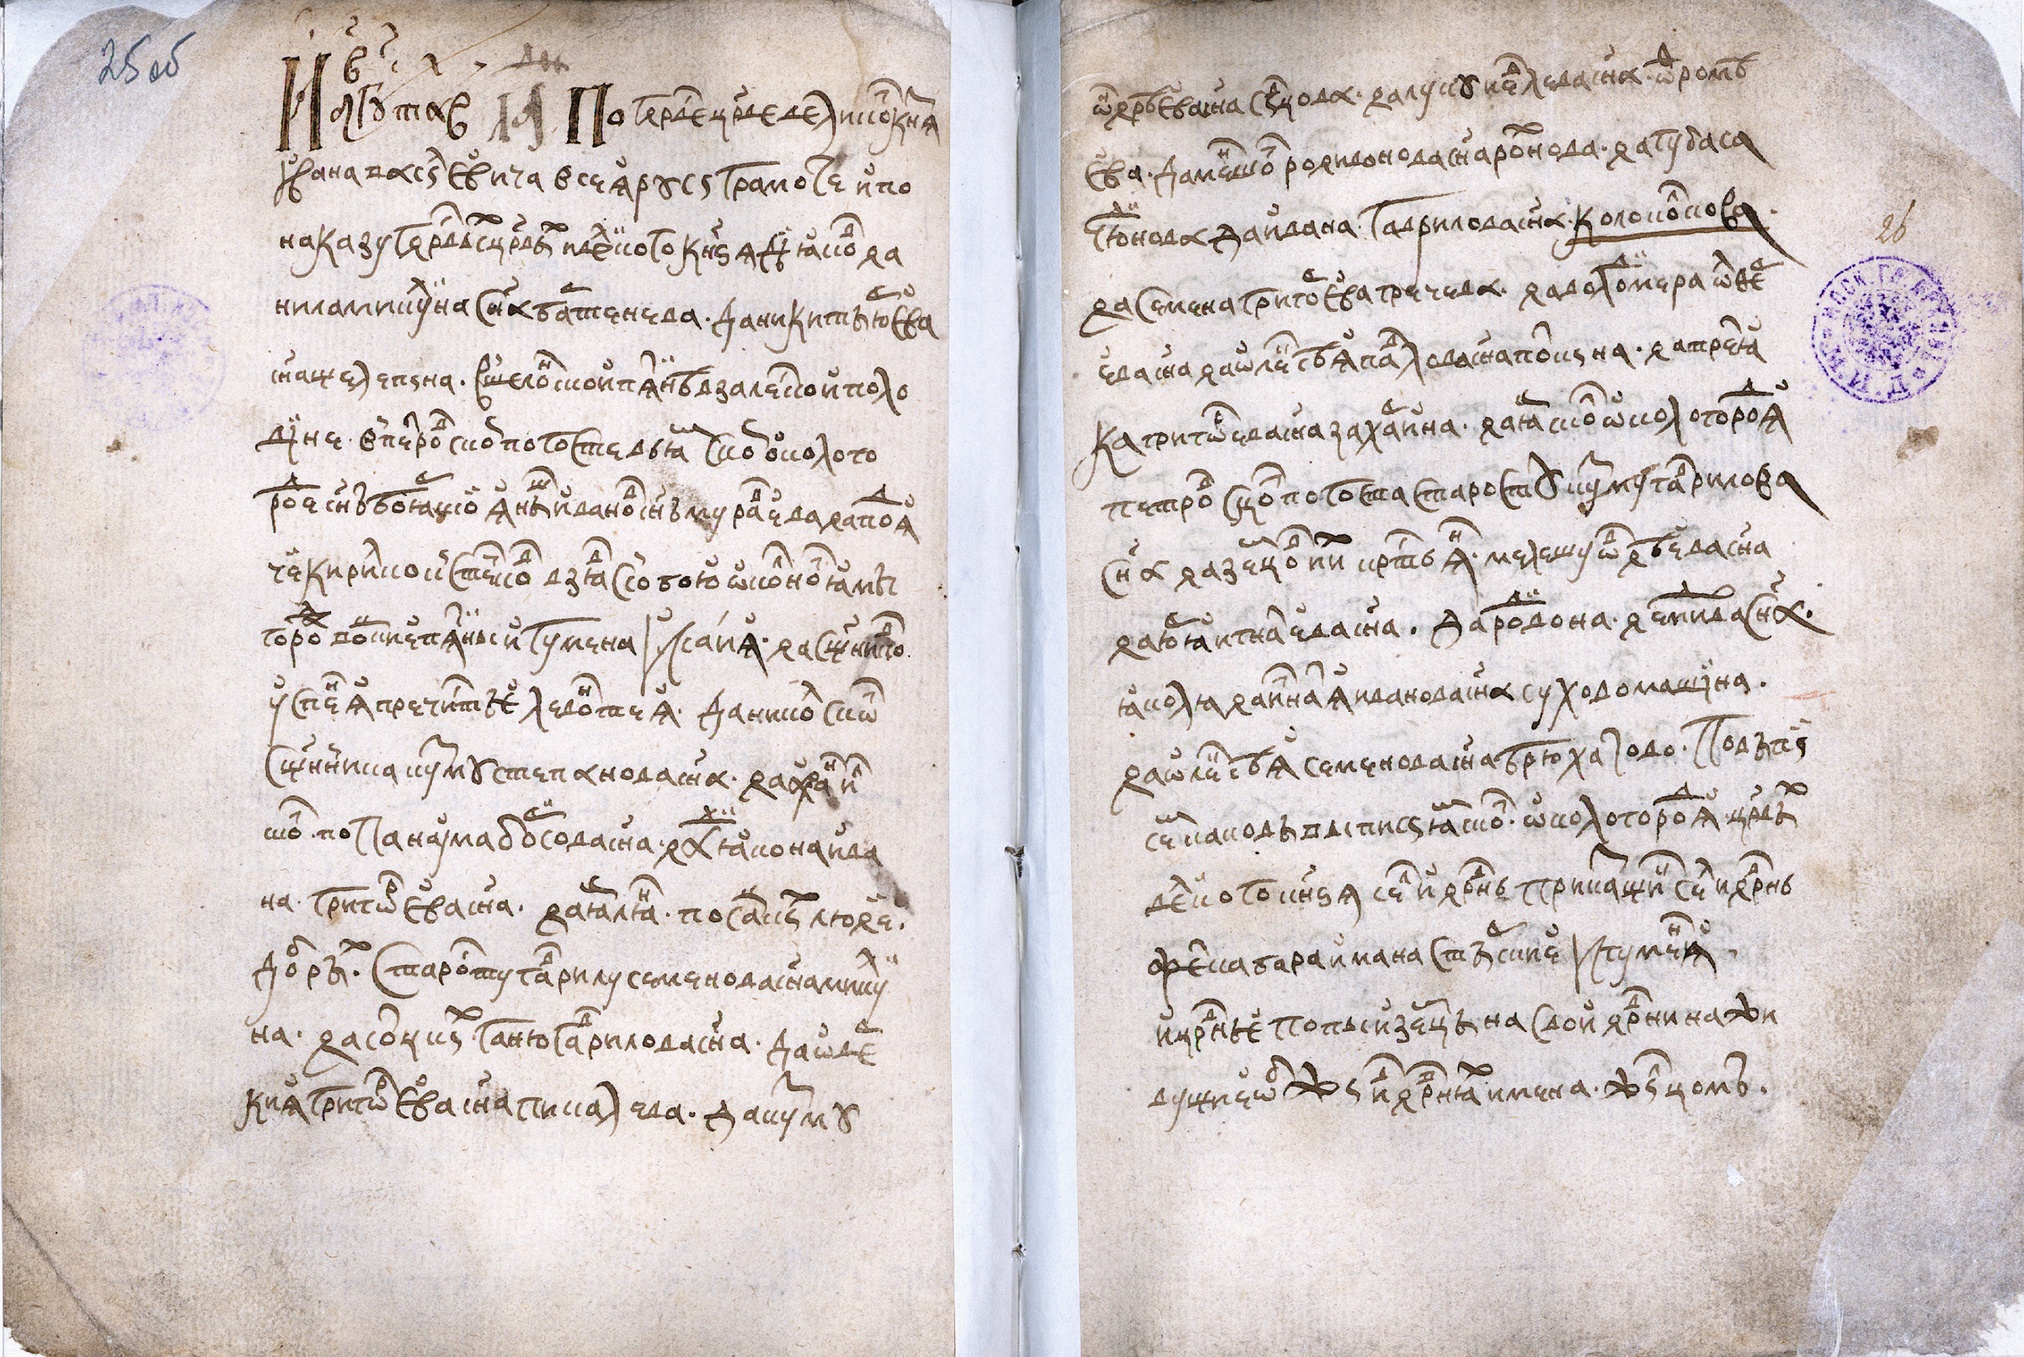 Кратка над неслоговыми гласными «ю», «ω», «ε», «и», «я» на примере текста скорописи из писцовой книги конца XVI века.